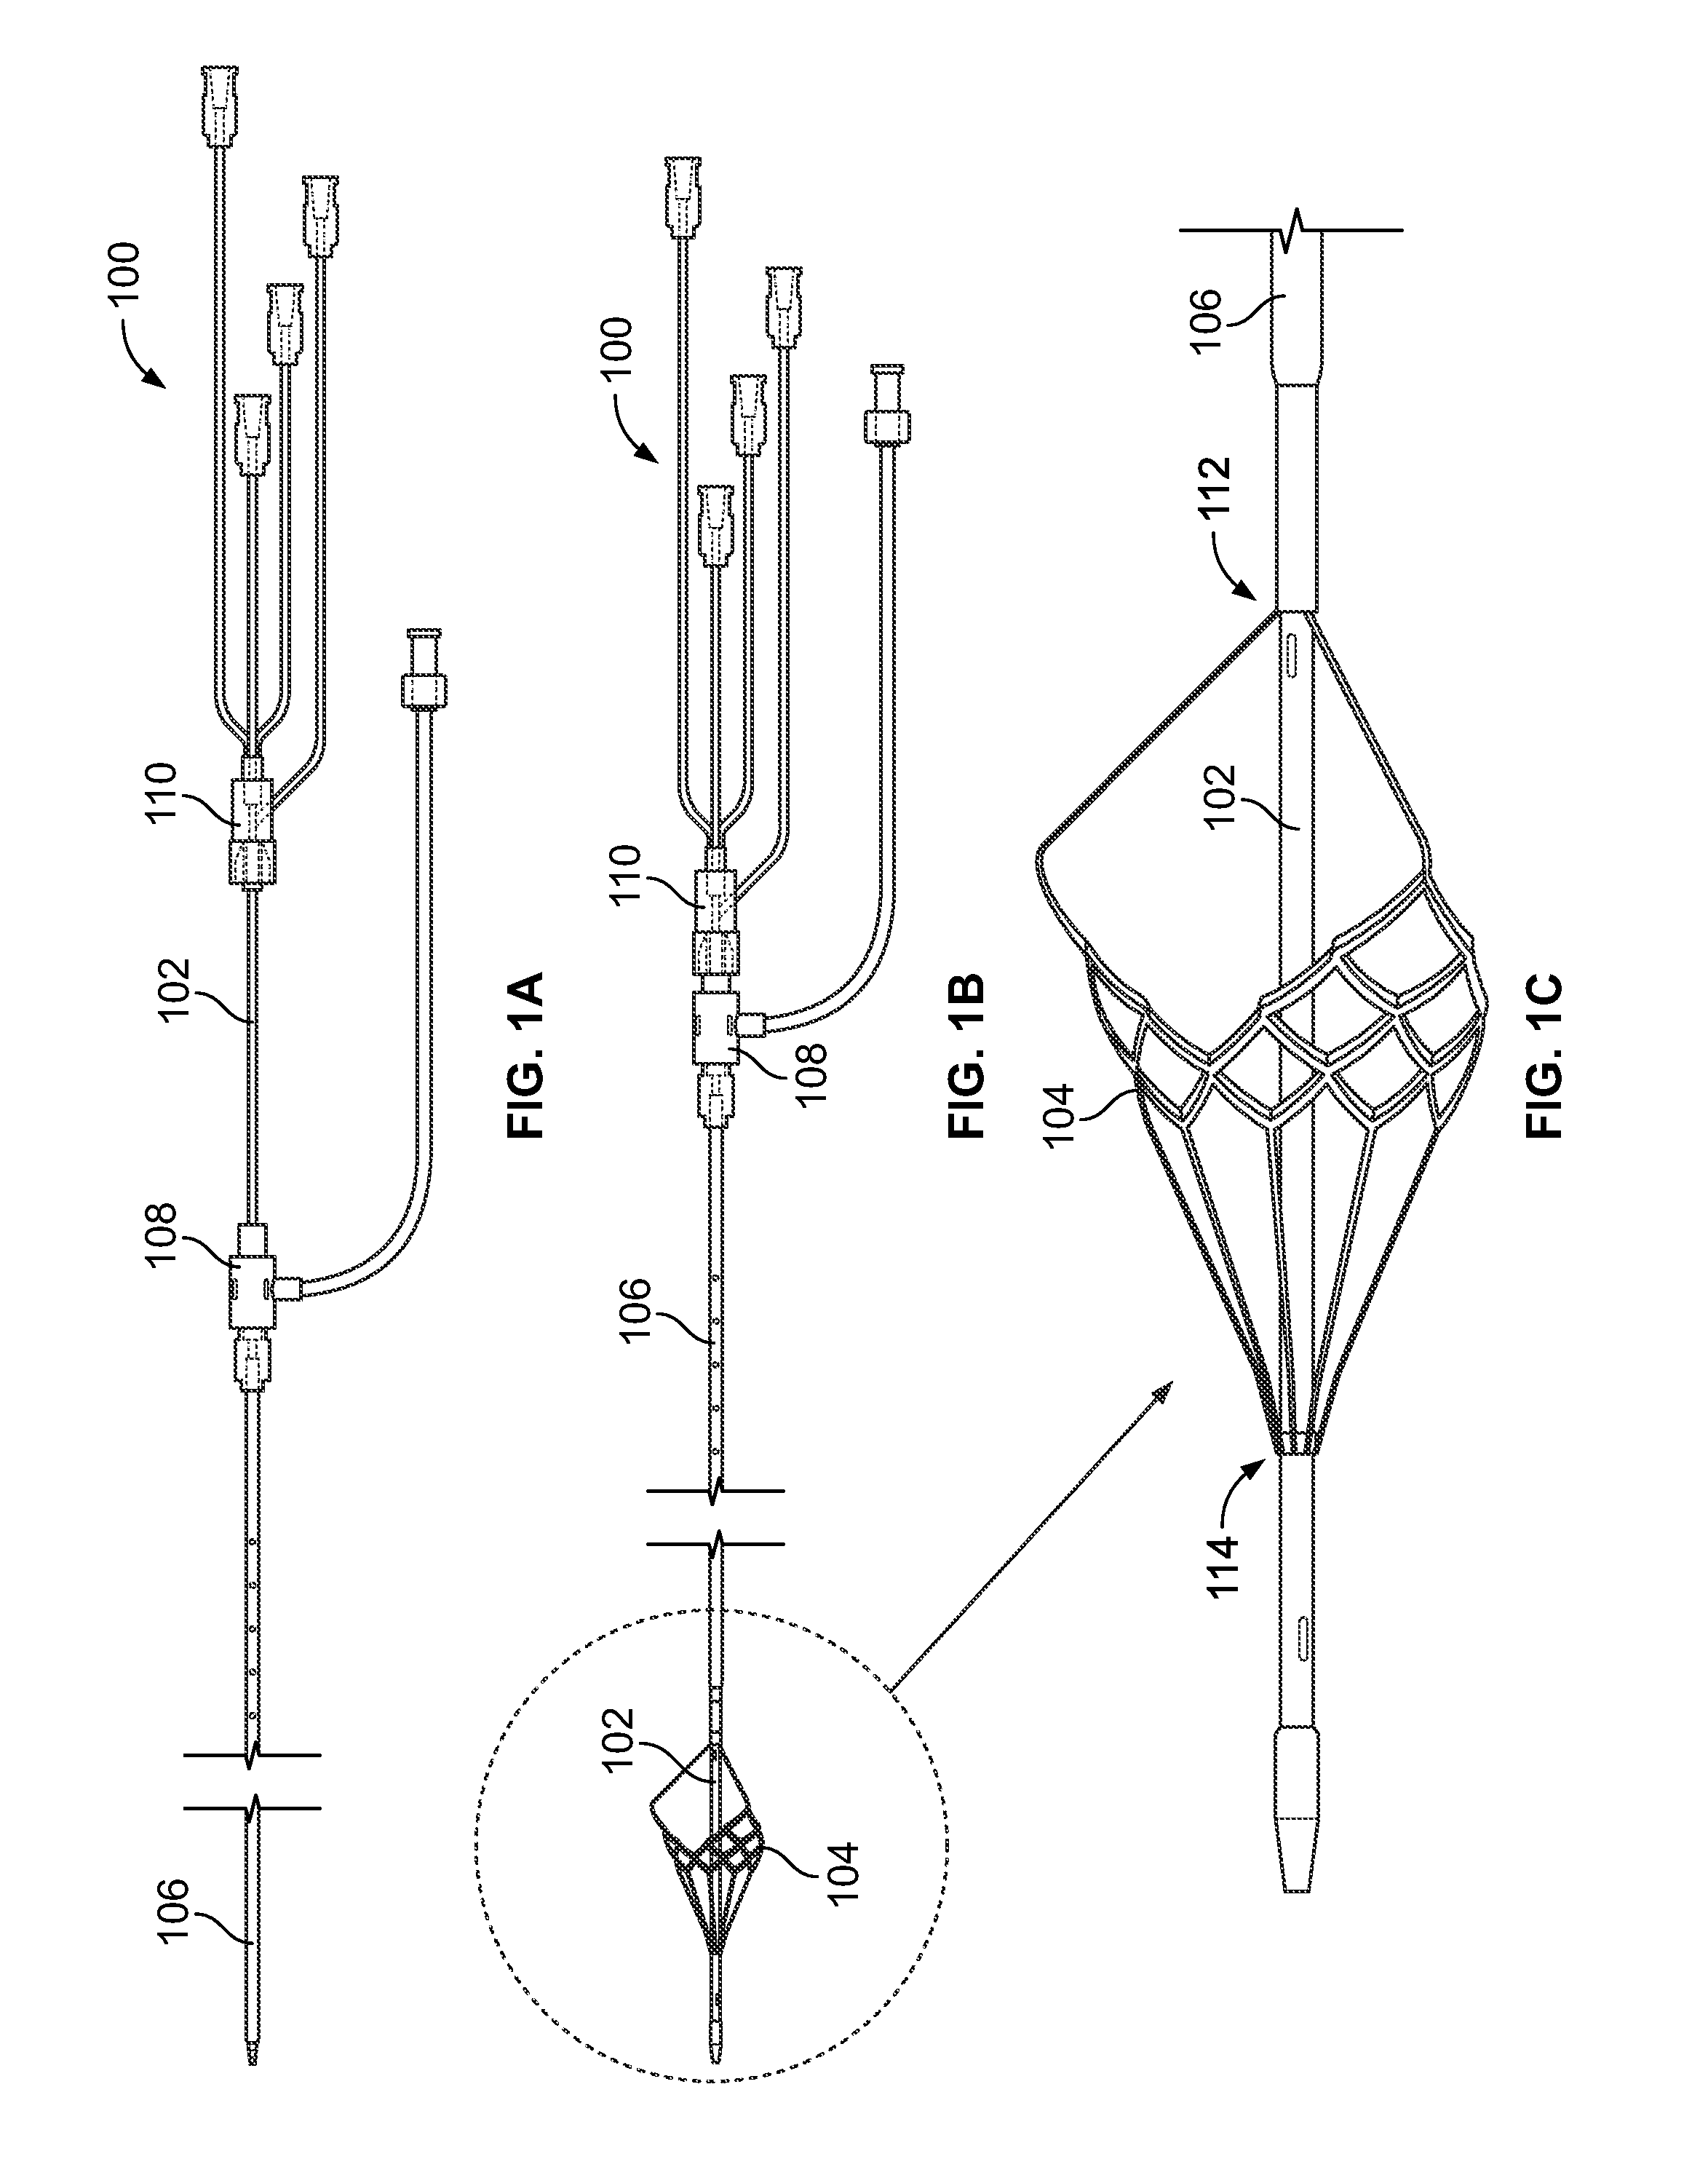 Temporary filter retrieval apparatus and method